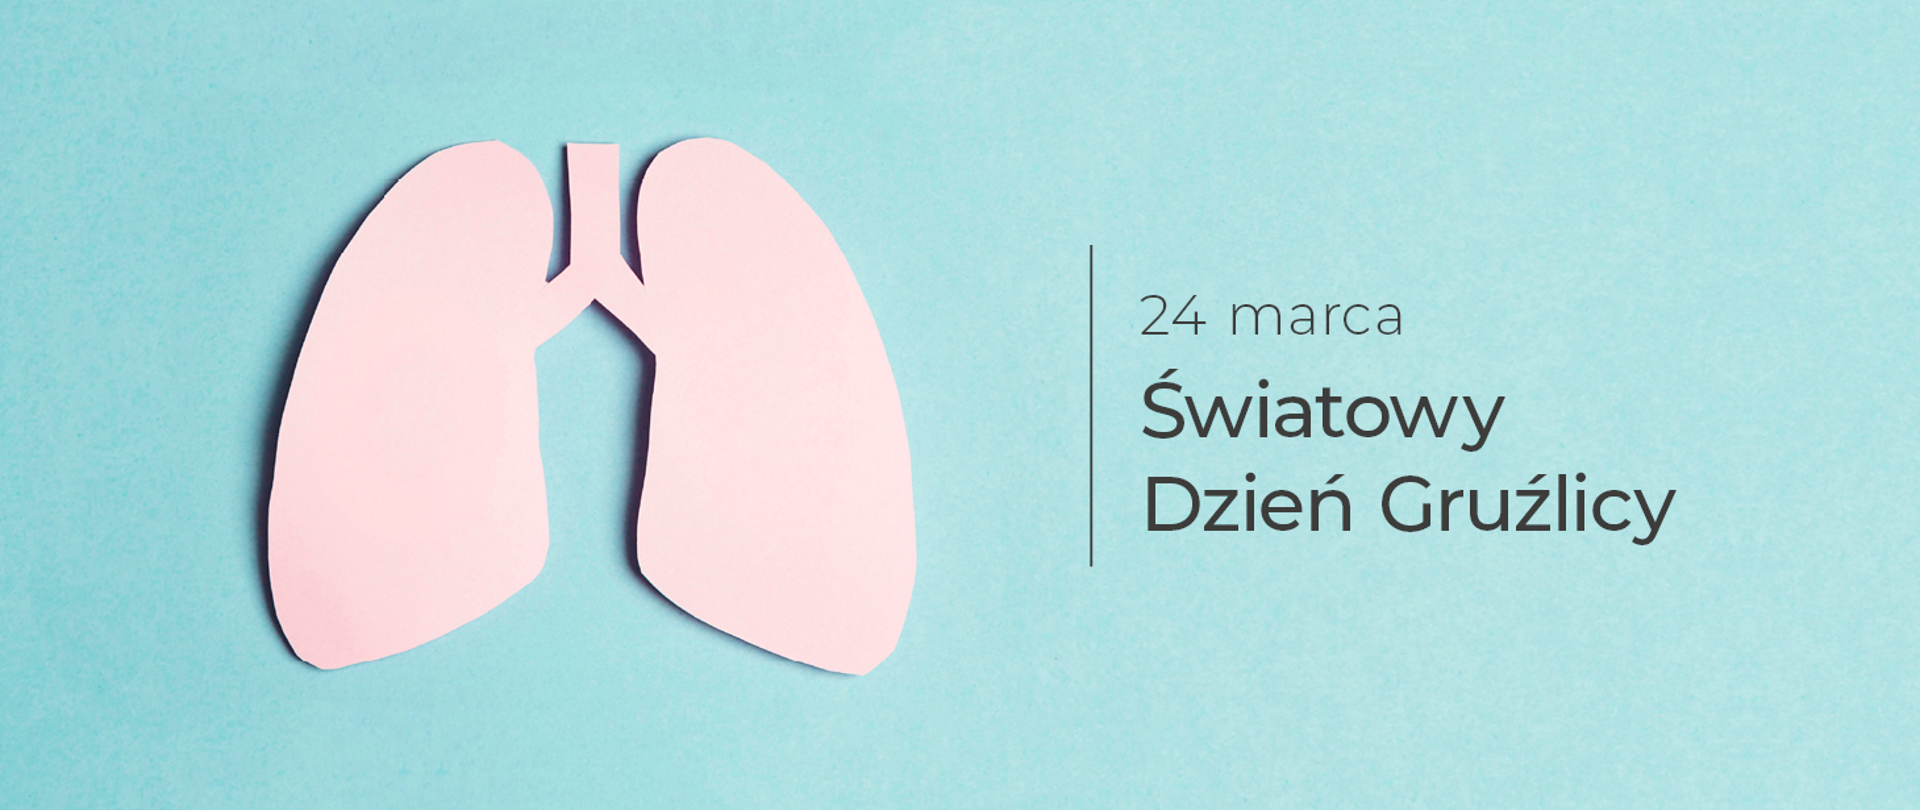 Grafika z zarysem kształtu płuc i napisem: 24 marca Światowy Dzień Gruźlicy